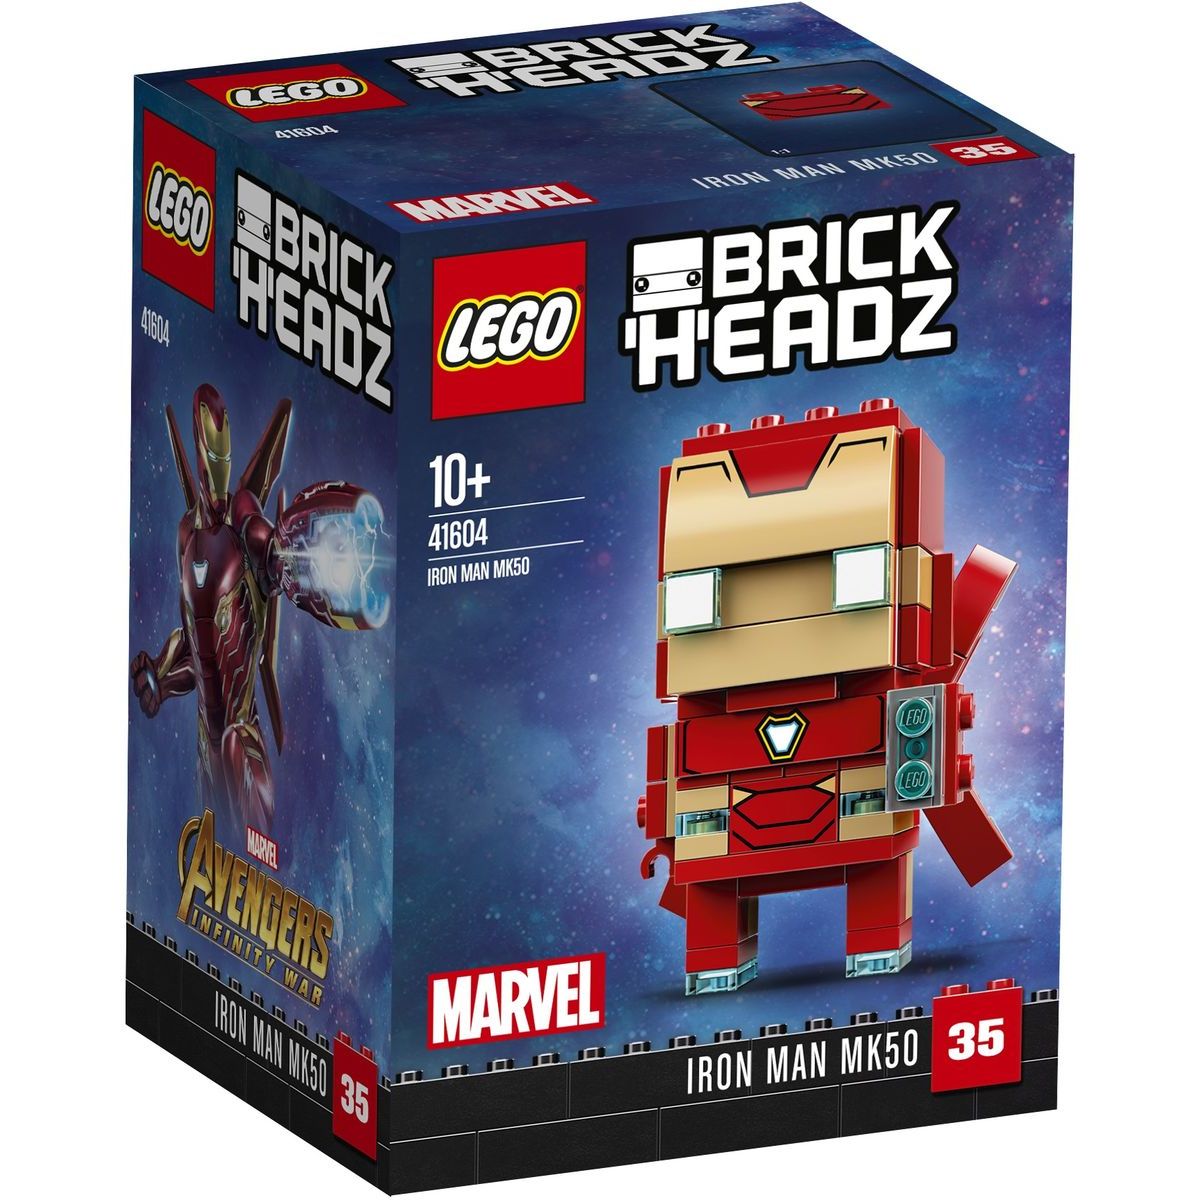 LEGO BrickHeadz! 41604 Iron Man MK50